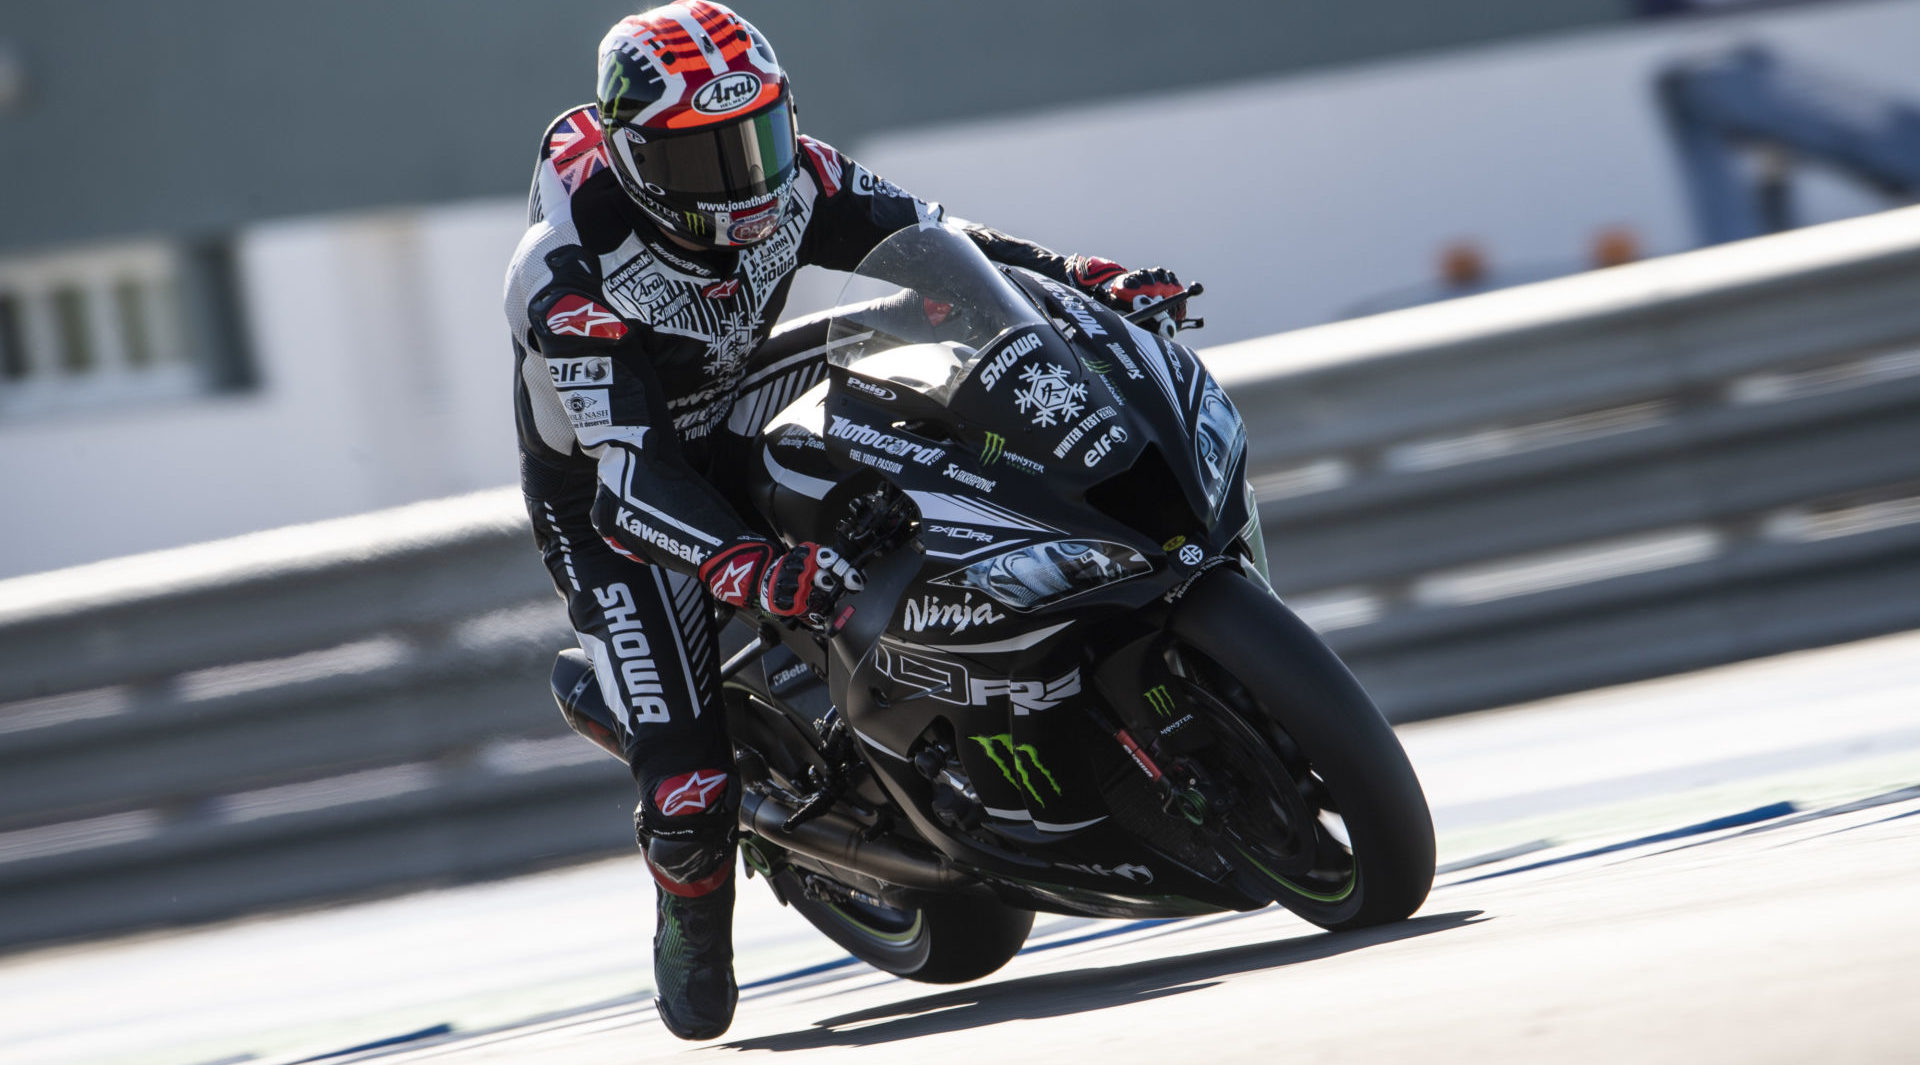 Jonathan Rea in action at Jerez. Photo courtesy of Kawasaki.